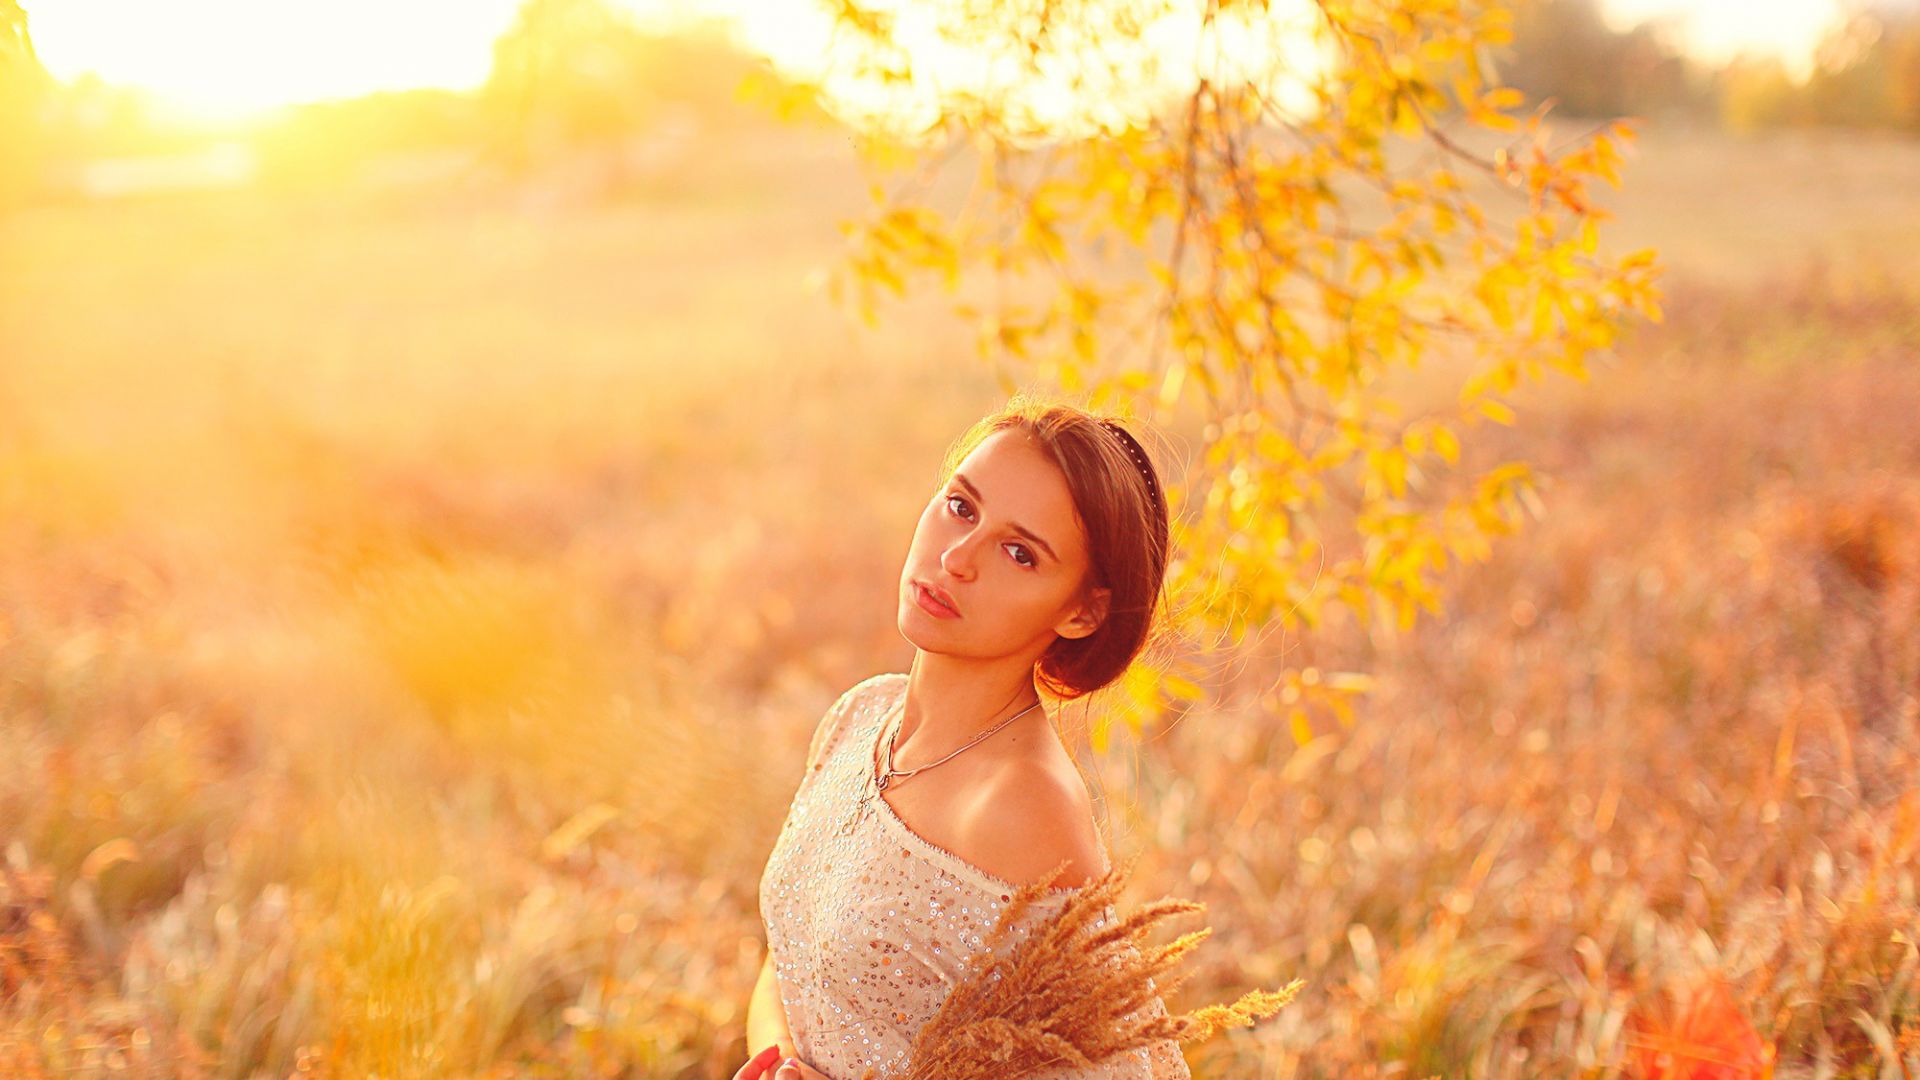 Wallpaper Beautiful girl model in grass field